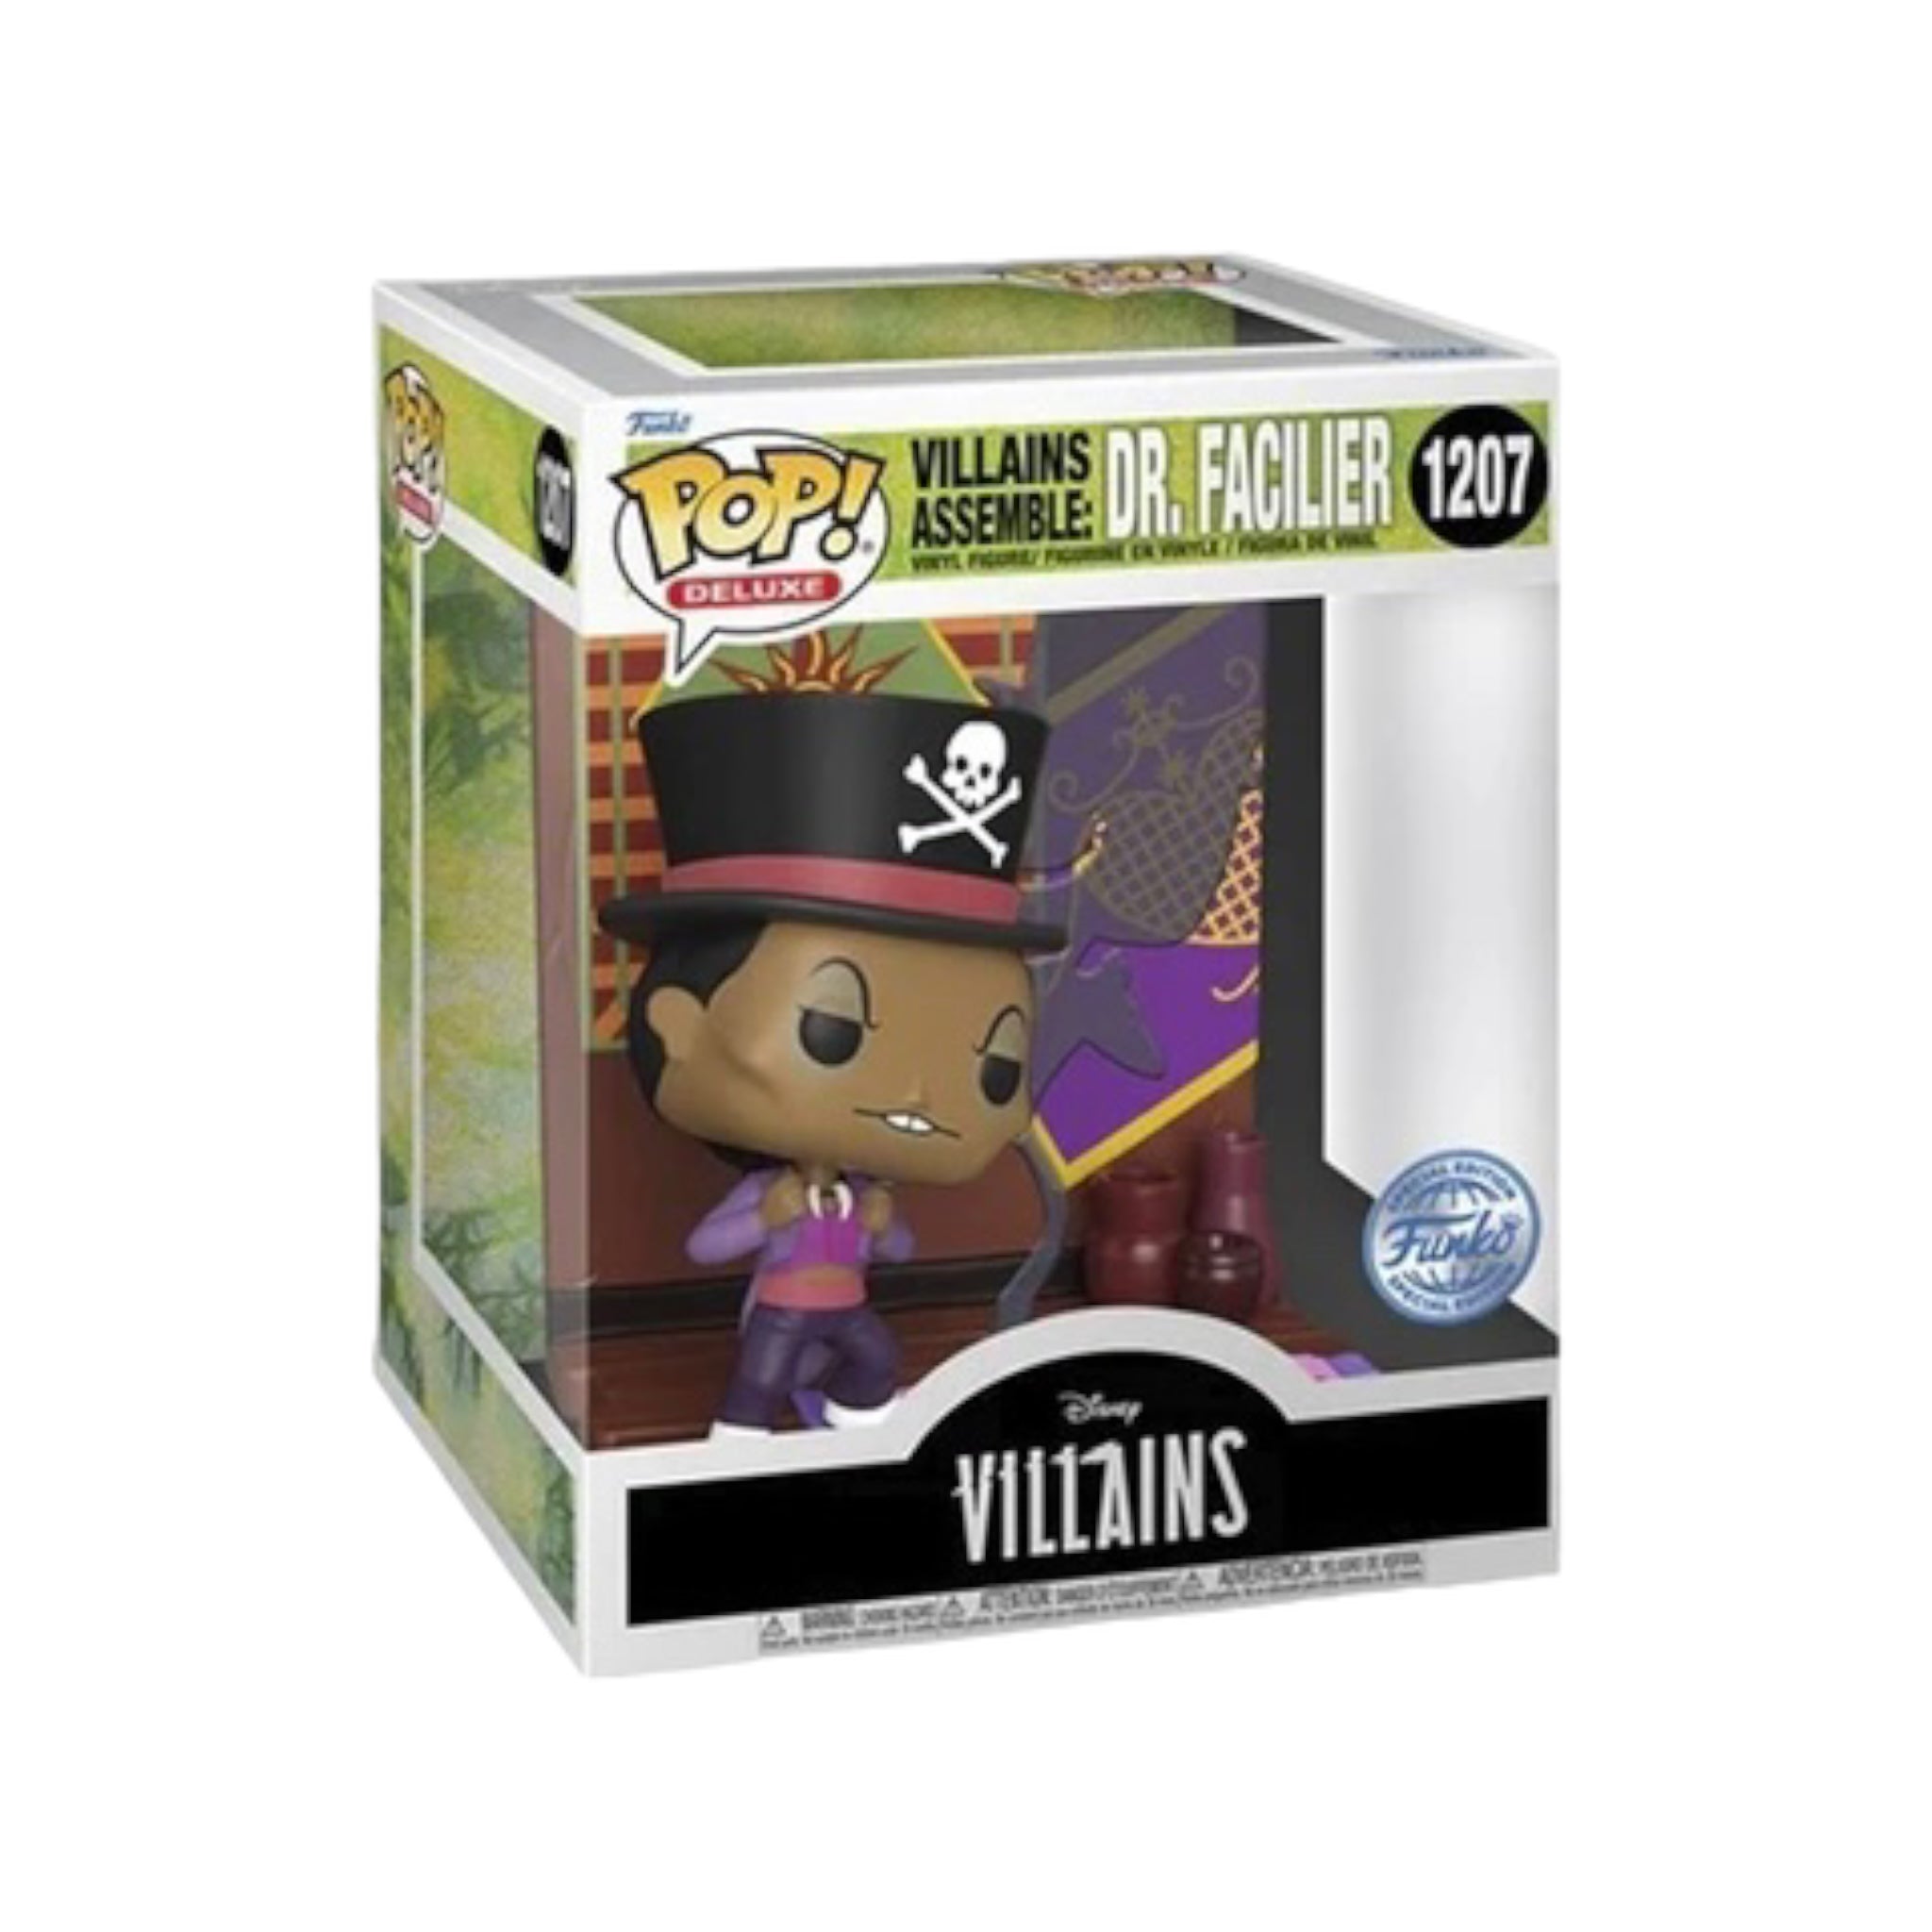 Villains Assemble: Dr. Facilier #1207 6" Funko Pop! - Disney Villains - Special Edition